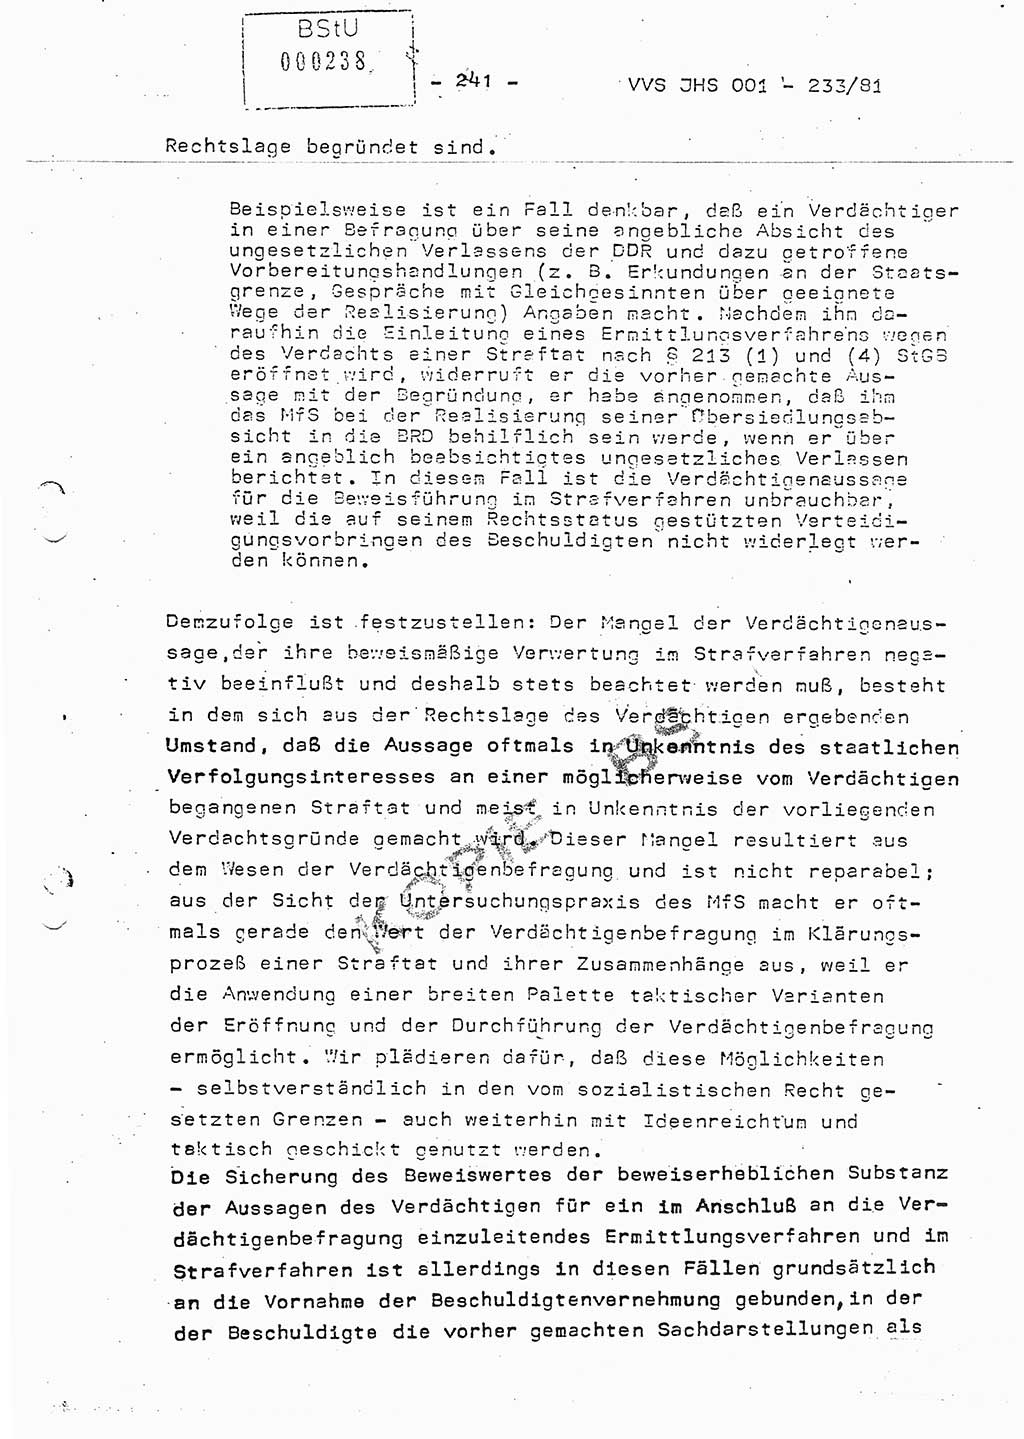 Dissertation Oberstleutnant Horst Zank (JHS), Oberstleutnant Dr. Karl-Heinz Knoblauch (JHS), Oberstleutnant Gustav-Adolf Kowalewski (HA Ⅸ), Oberstleutnant Wolfgang Plötner (HA Ⅸ), Ministerium für Staatssicherheit (MfS) [Deutsche Demokratische Republik (DDR)], Juristische Hochschule (JHS), Vertrauliche Verschlußsache (VVS) o001-233/81, Potsdam 1981, Blatt 241 (Diss. MfS DDR JHS VVS o001-233/81 1981, Bl. 241)